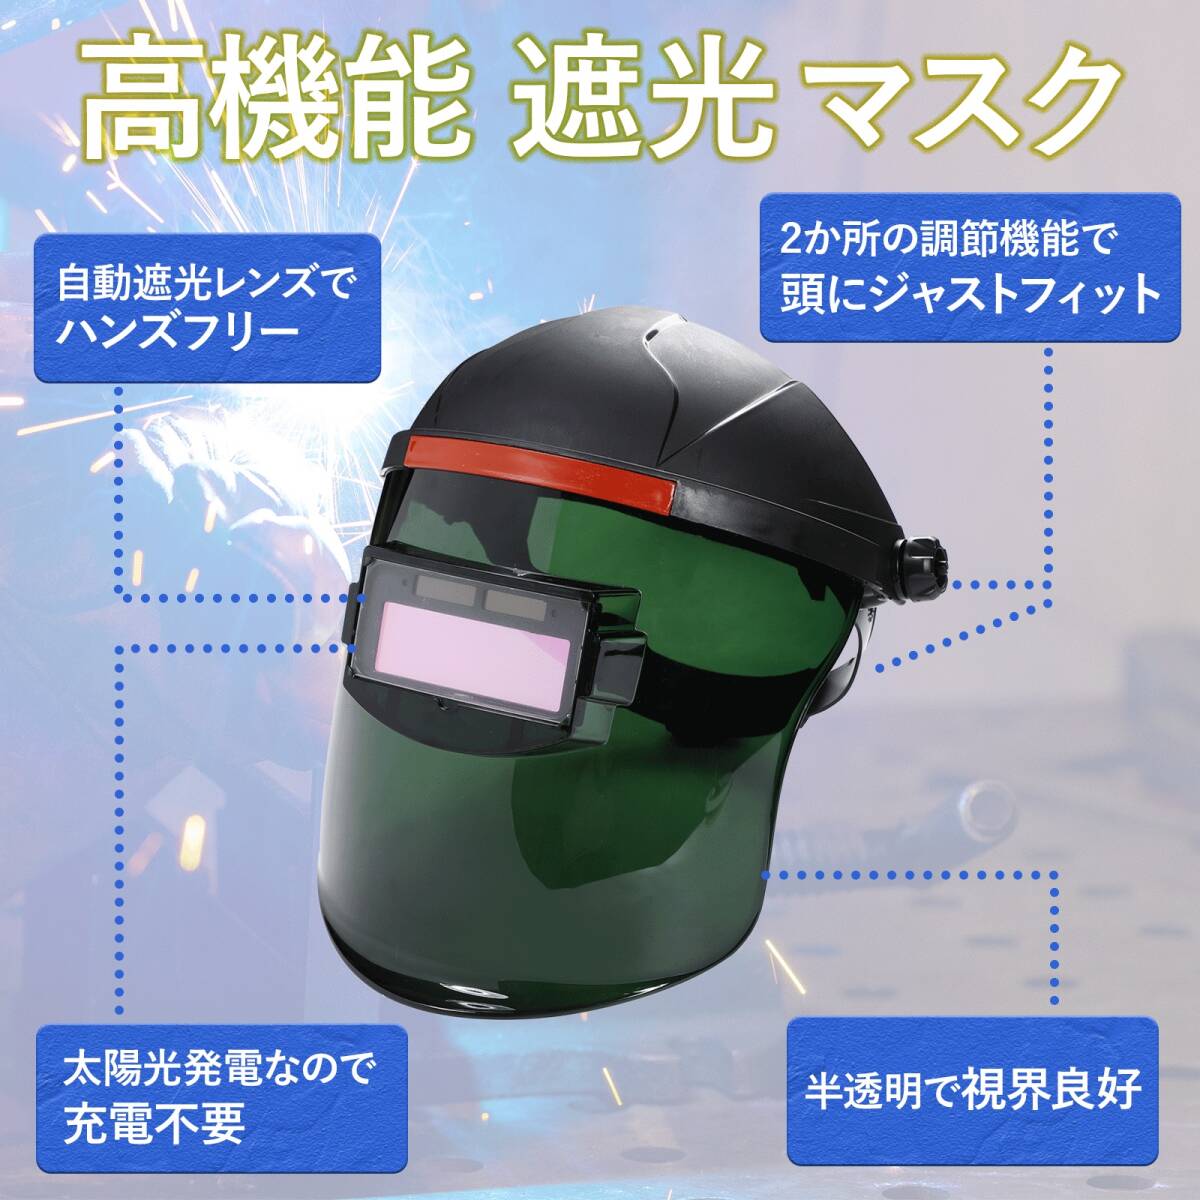 溶接面 自動遮光 溶接マスク 溶接ゴーグル 溶接ヘルメット 遮光面 ソーラー 充電 保護メガネ 軽量 角度調節可能 2-r-3_画像1